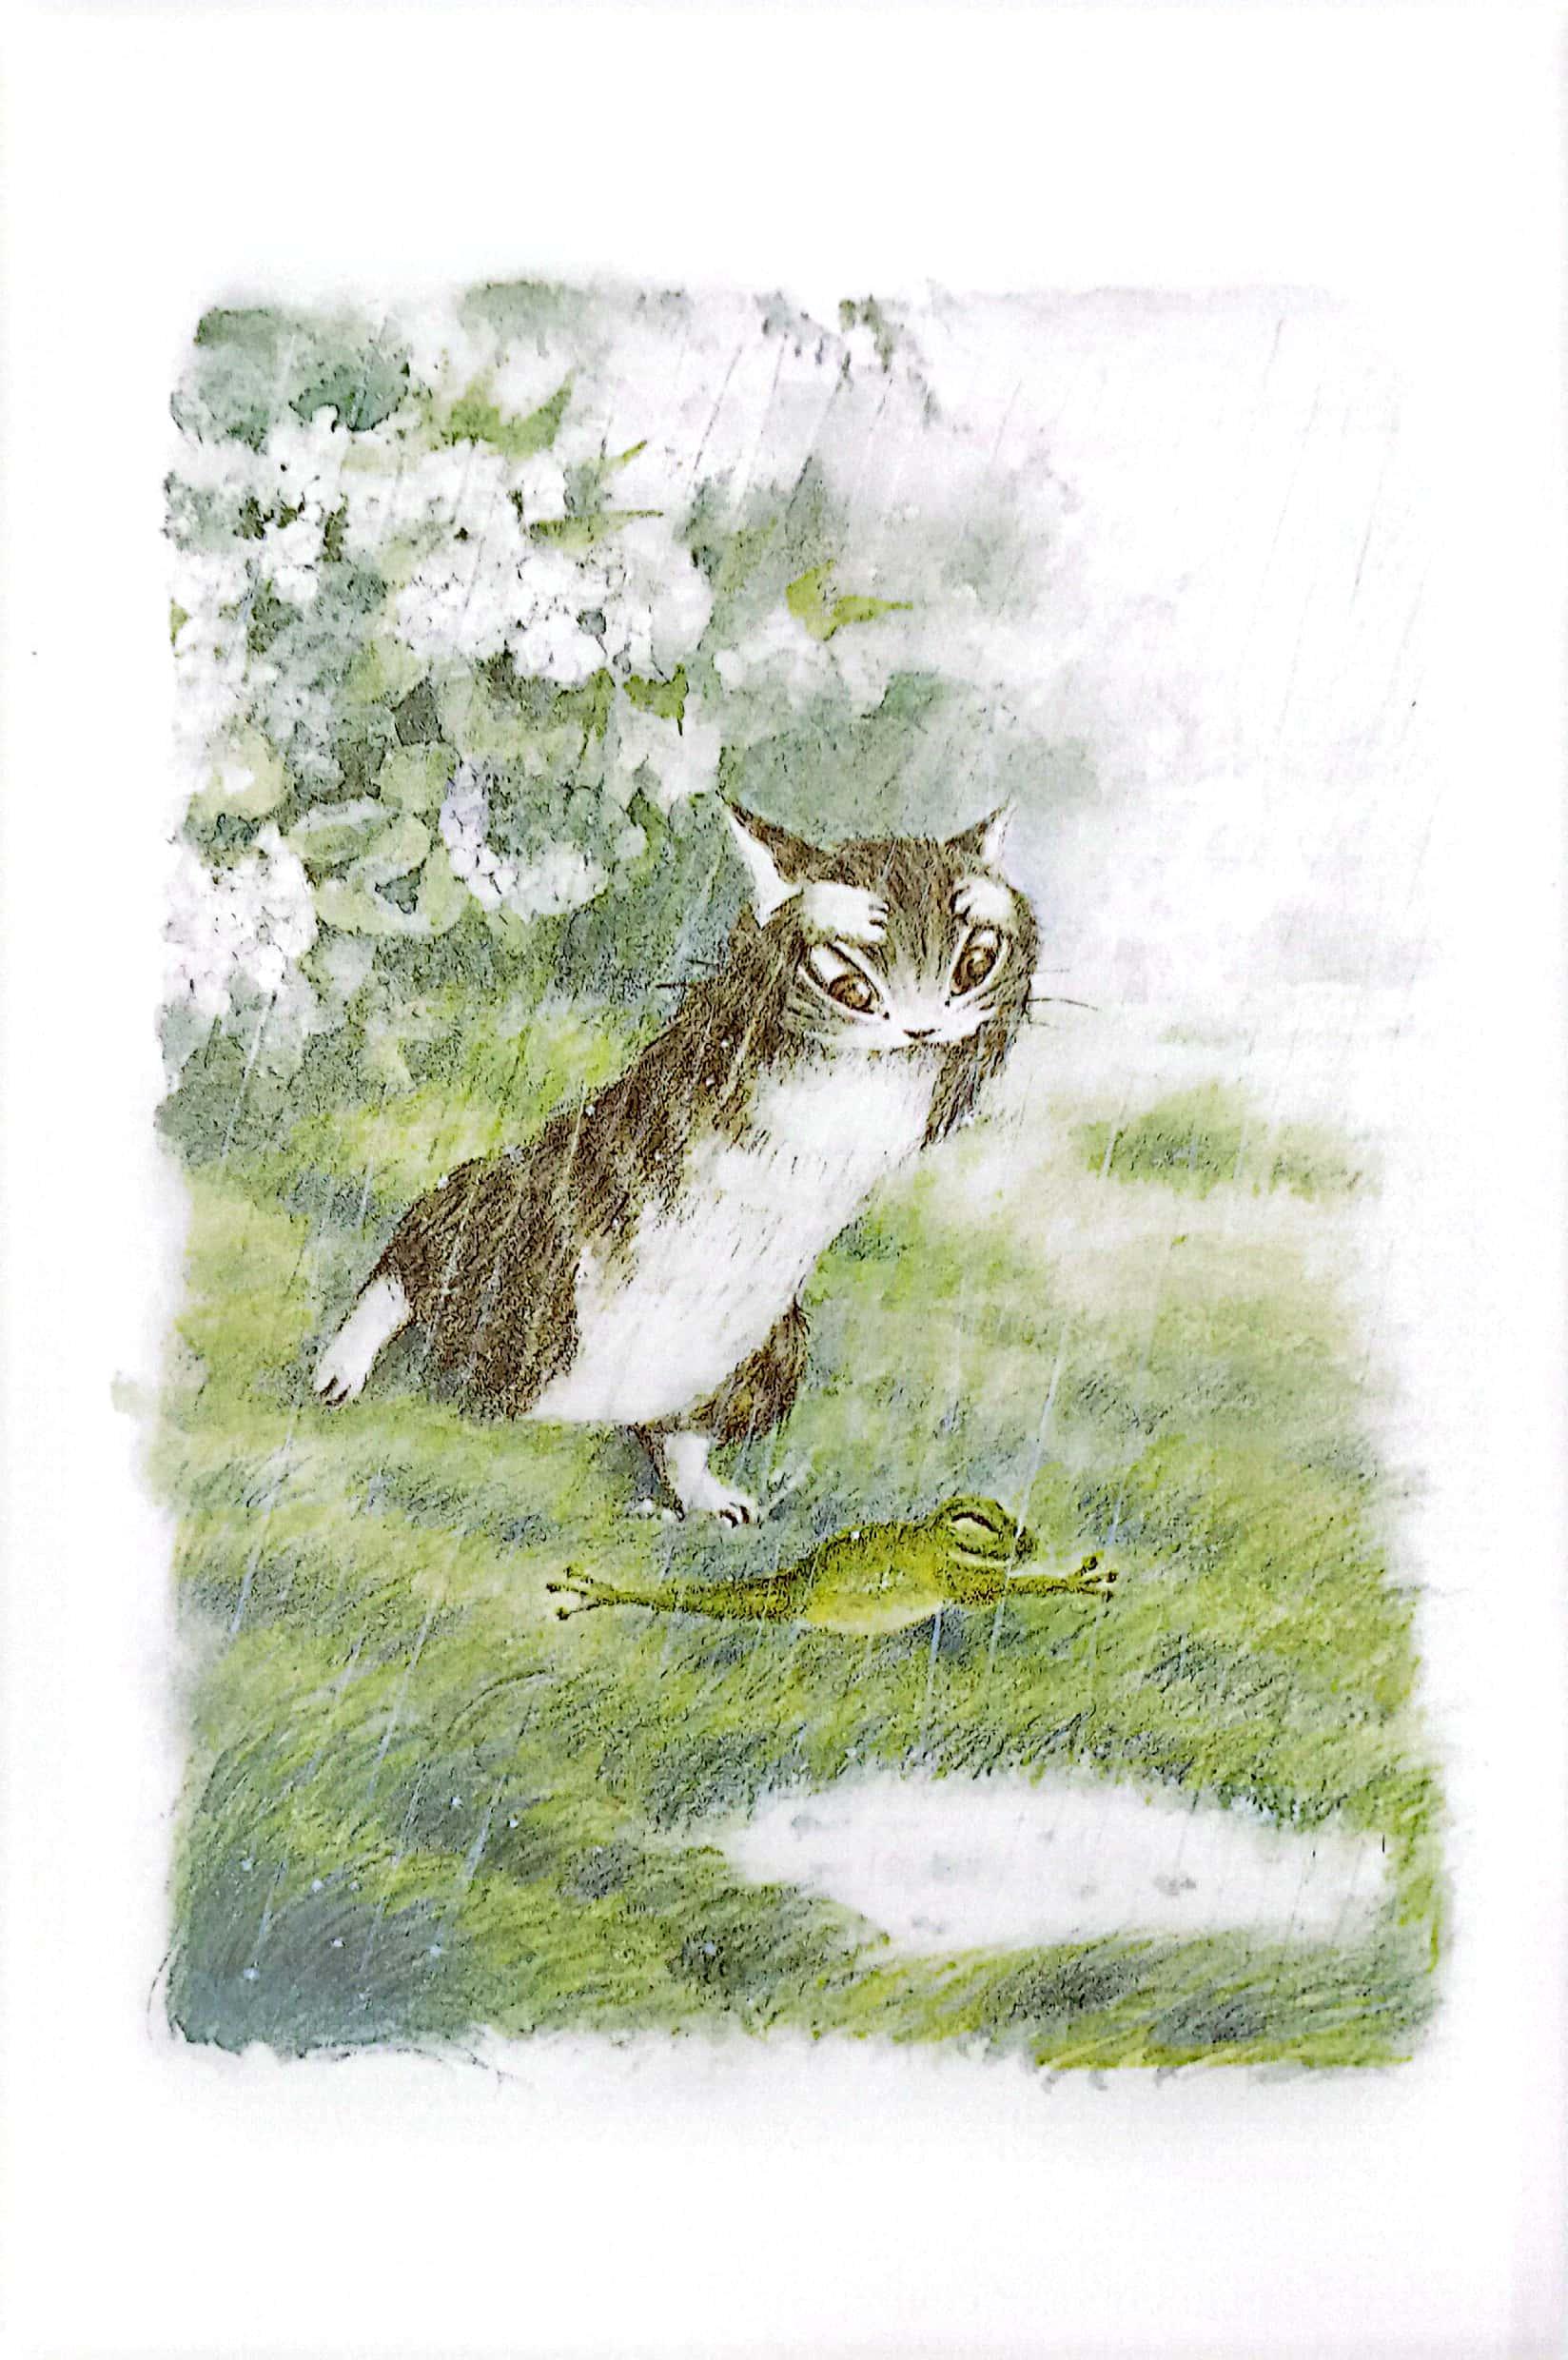 Combo Sách - Mogu Mọt Sách - Loạt Truyện Mèo Dayan (Bộ 4 Cuốn)